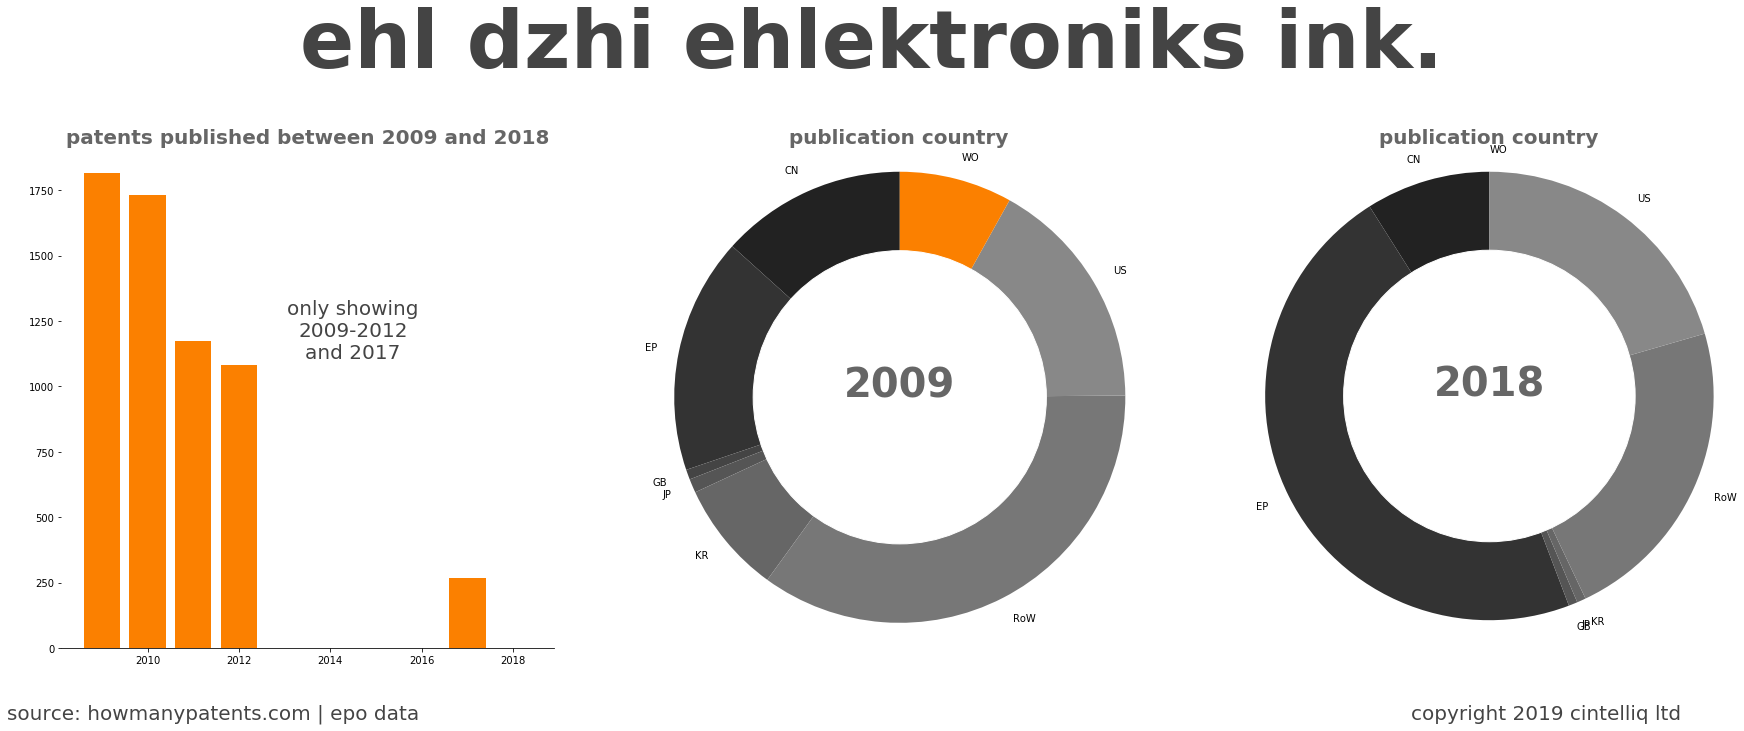 summary of patents for Ehl Dzhi Ehlektroniks Ink.